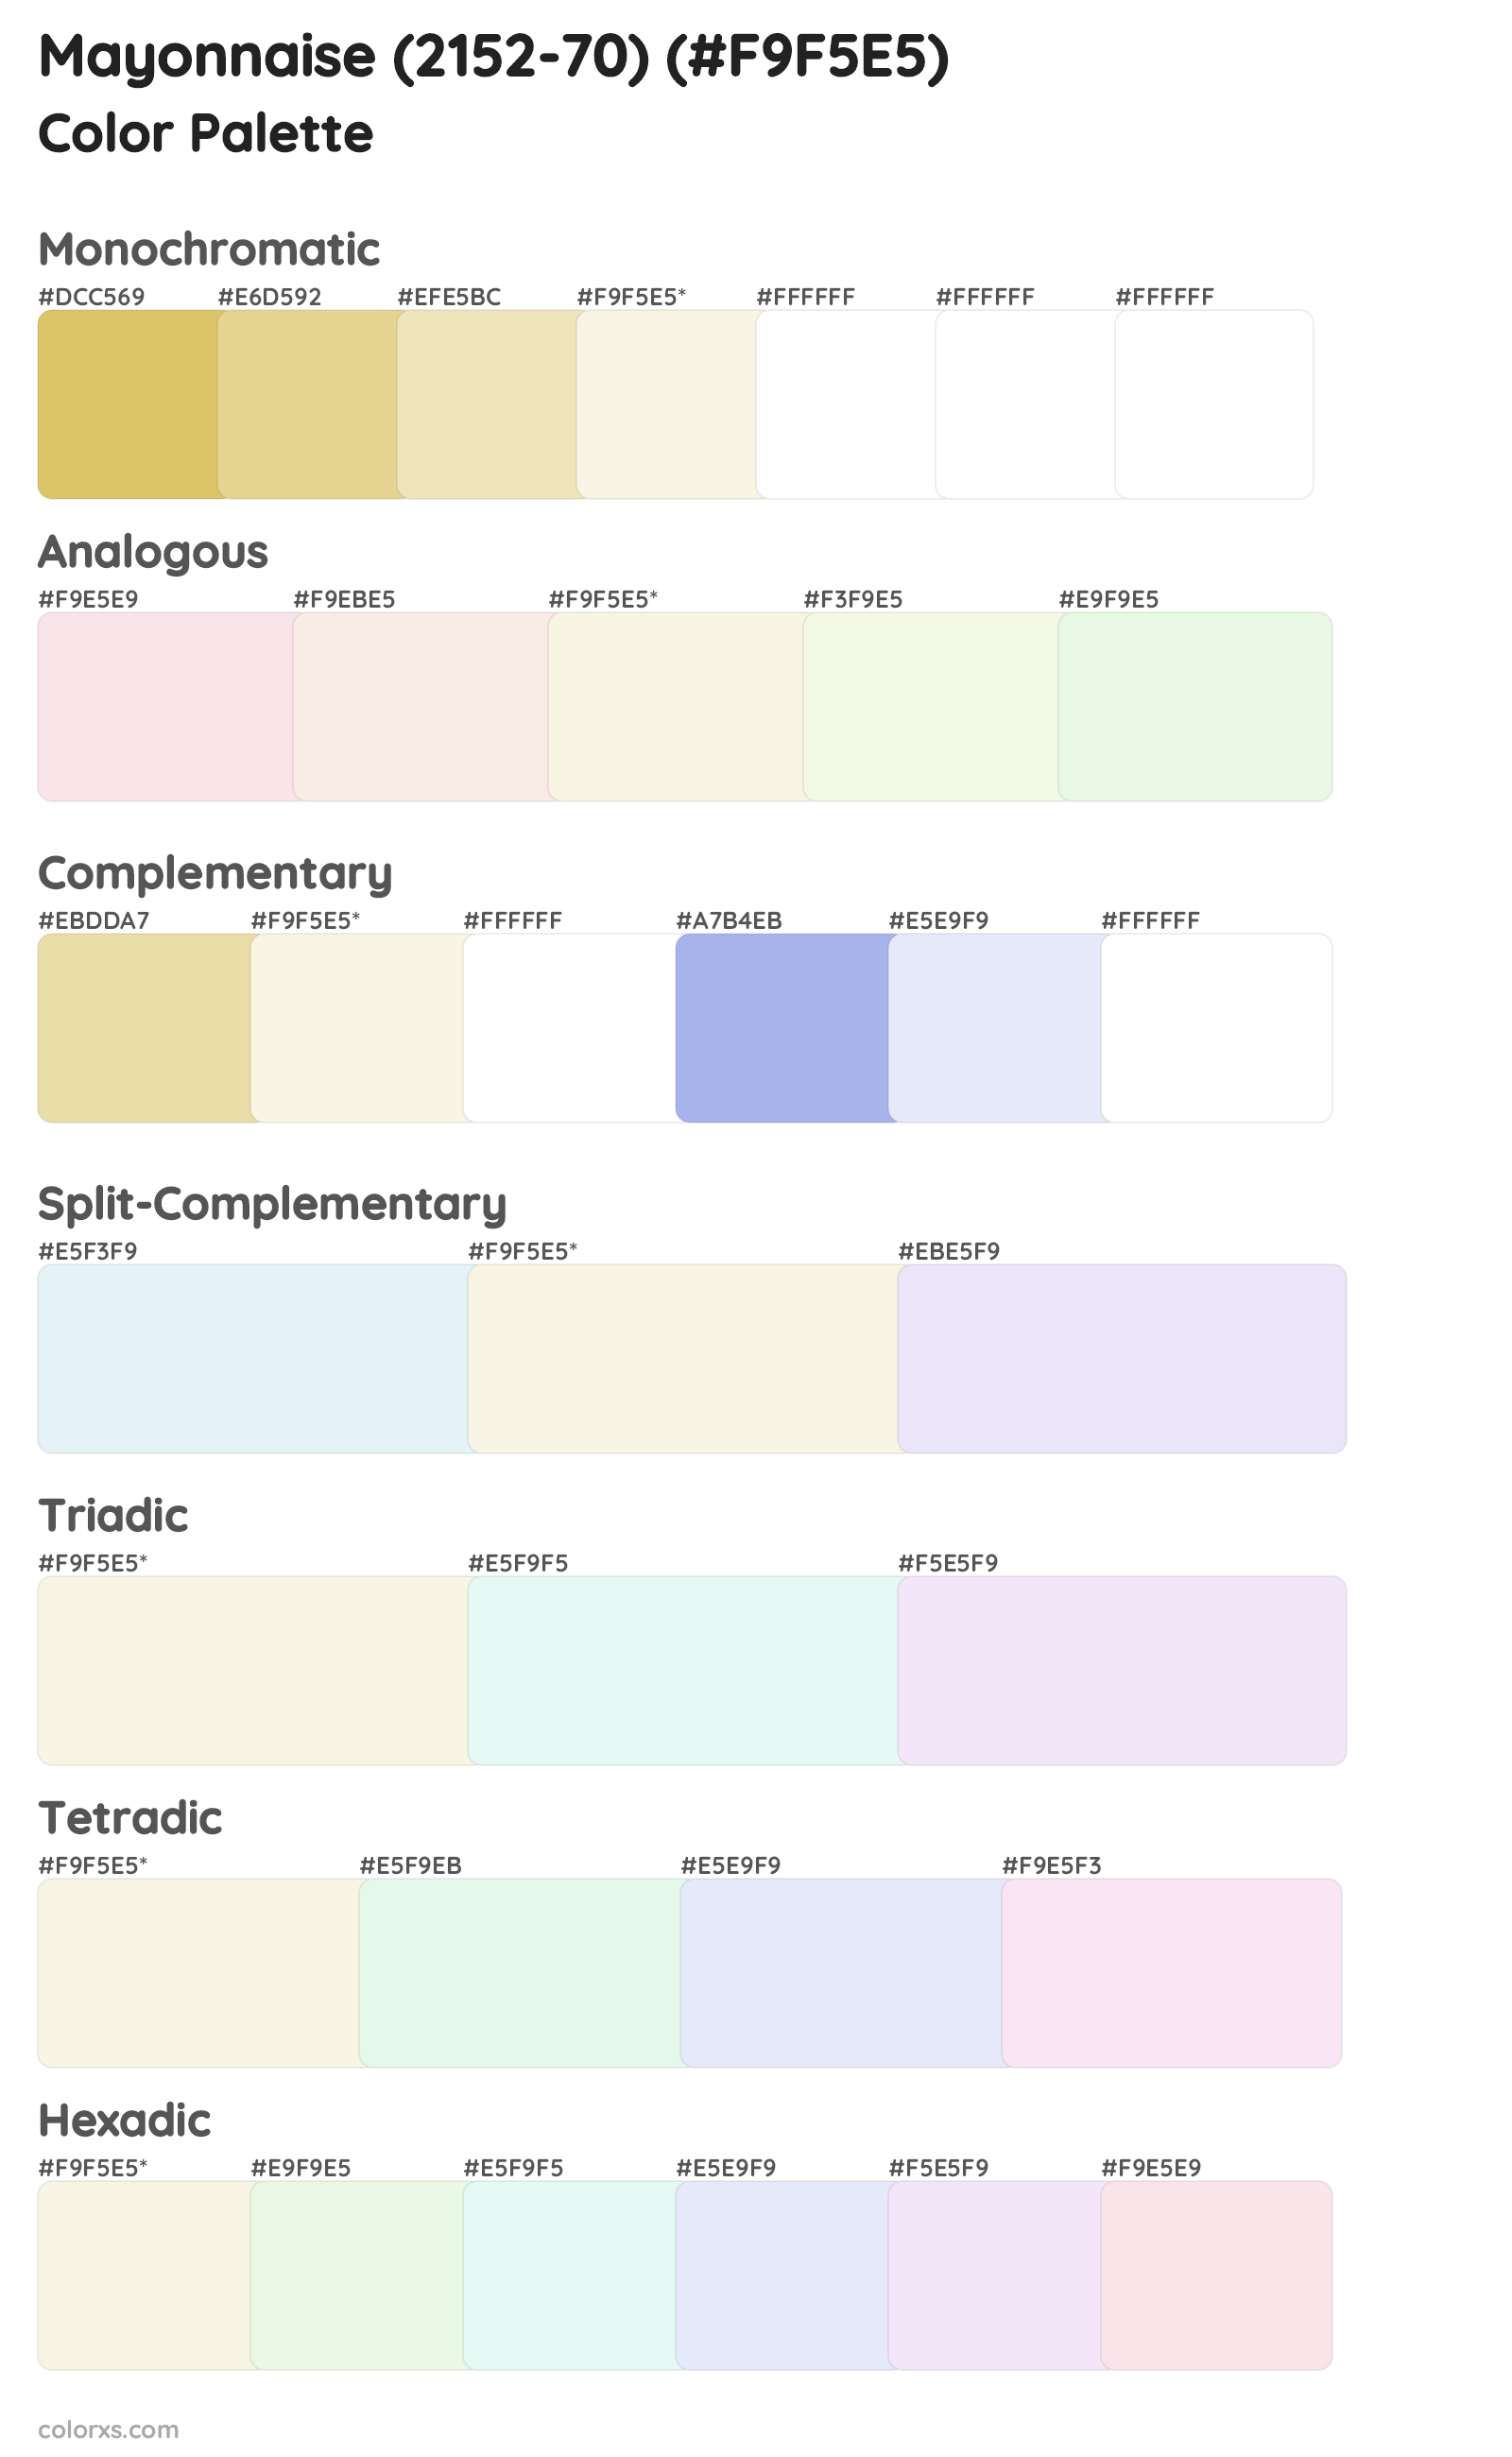 Mayonnaise (2152-70) Color Scheme Palettes